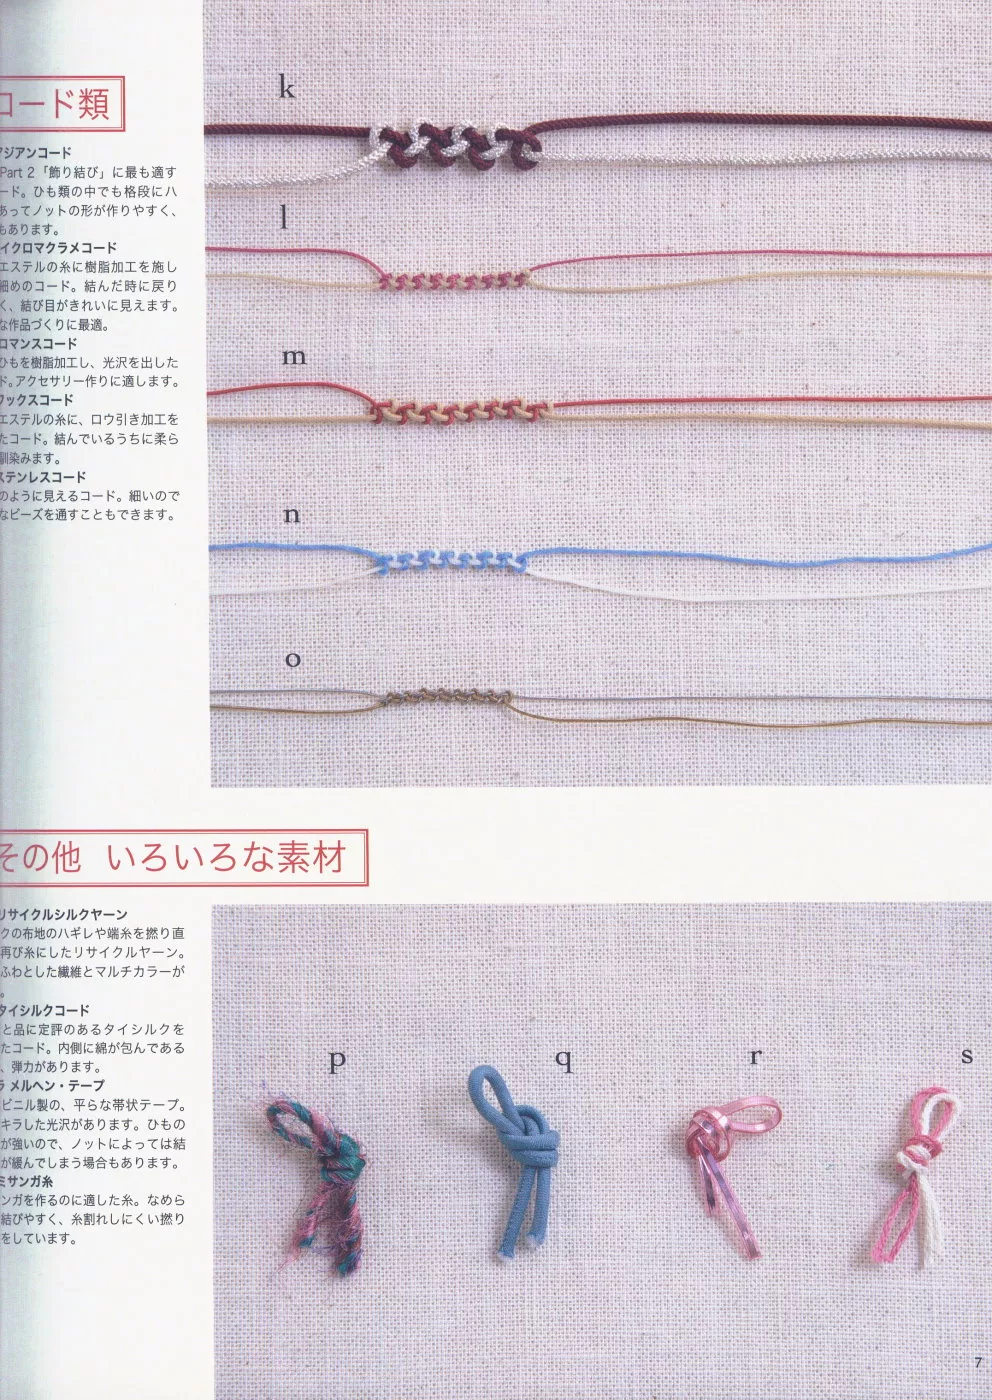 繩結編織所使用的材料